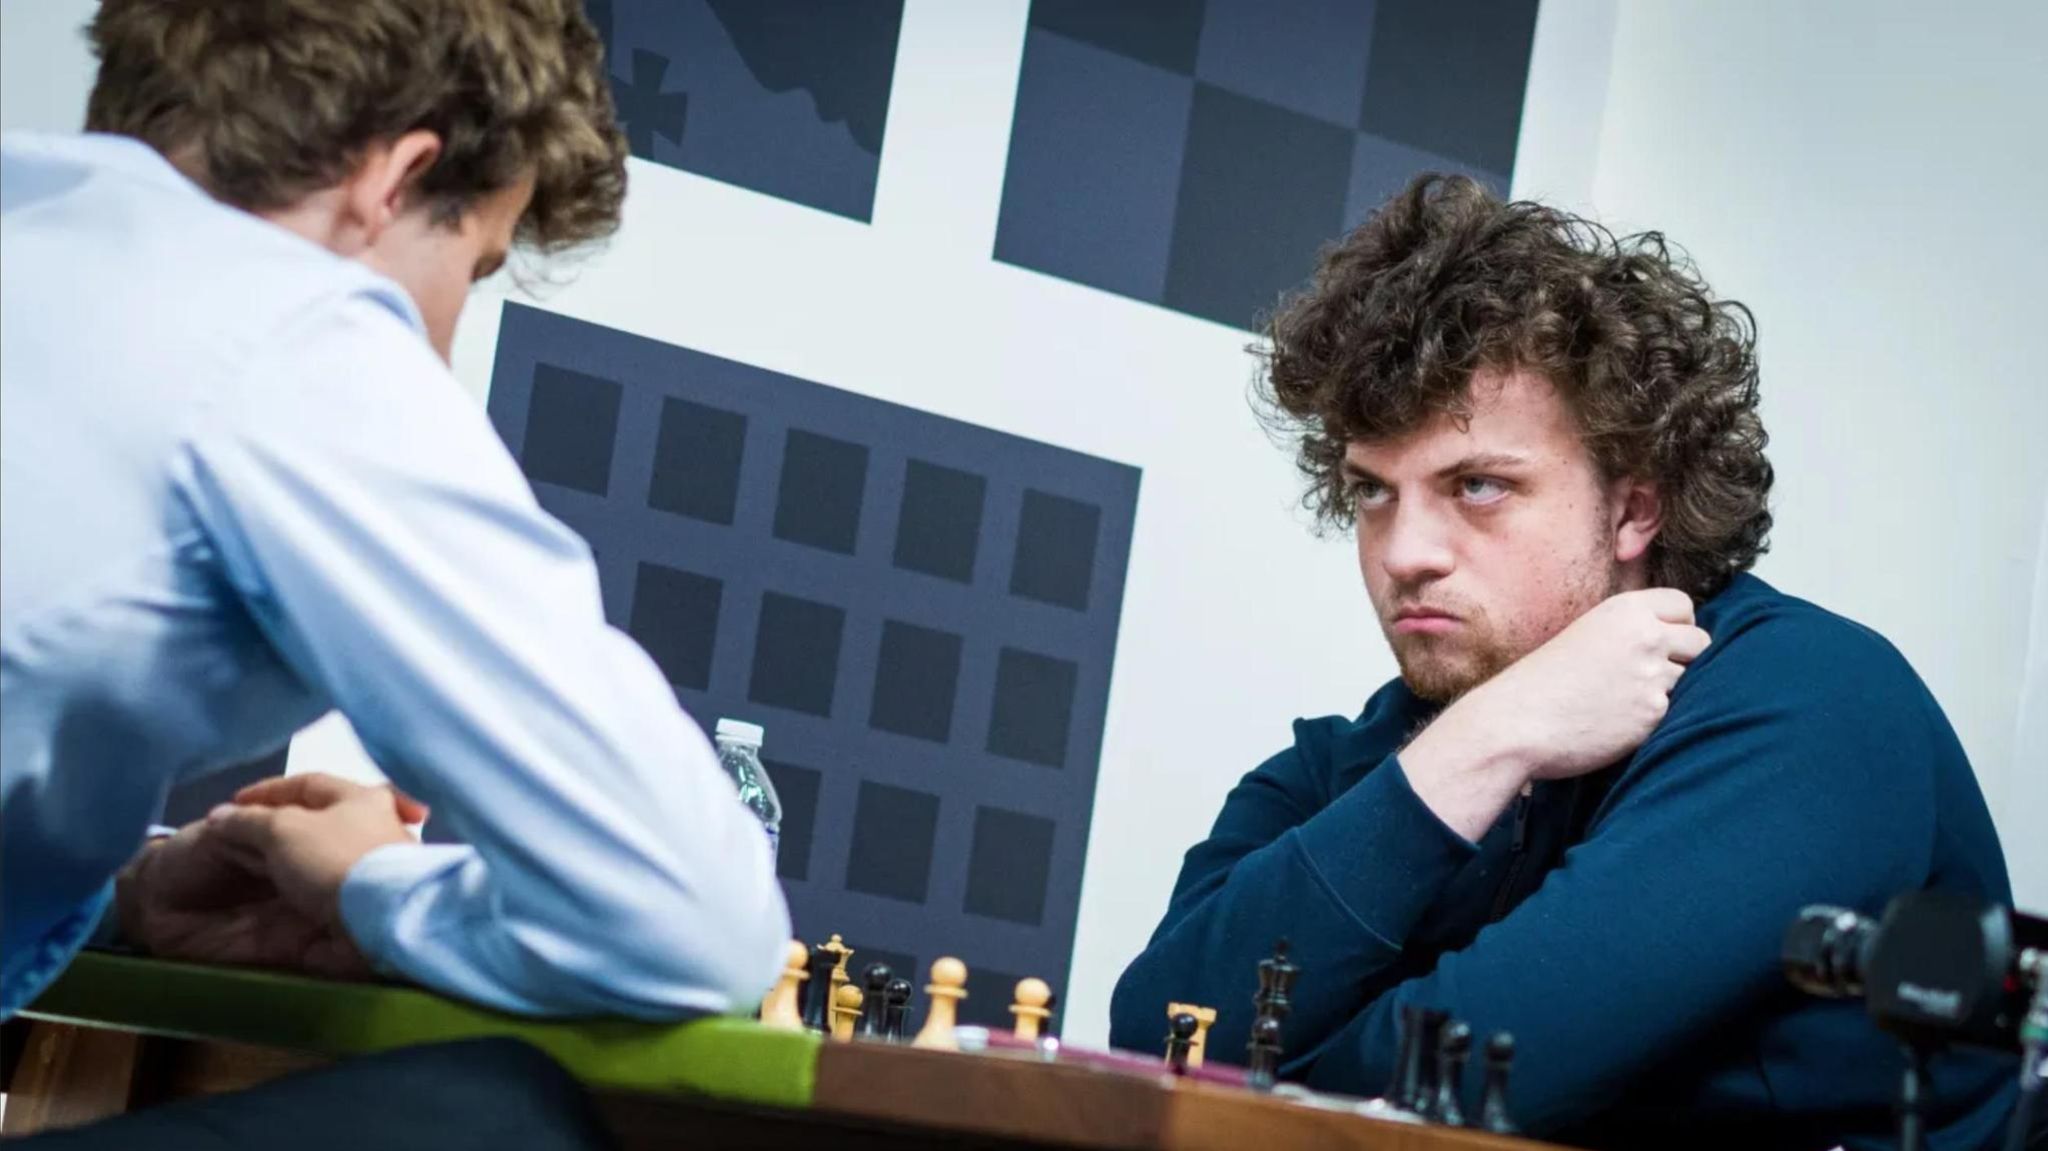 Schach Junger Mann schlägt sensationell Magnus Carlsen